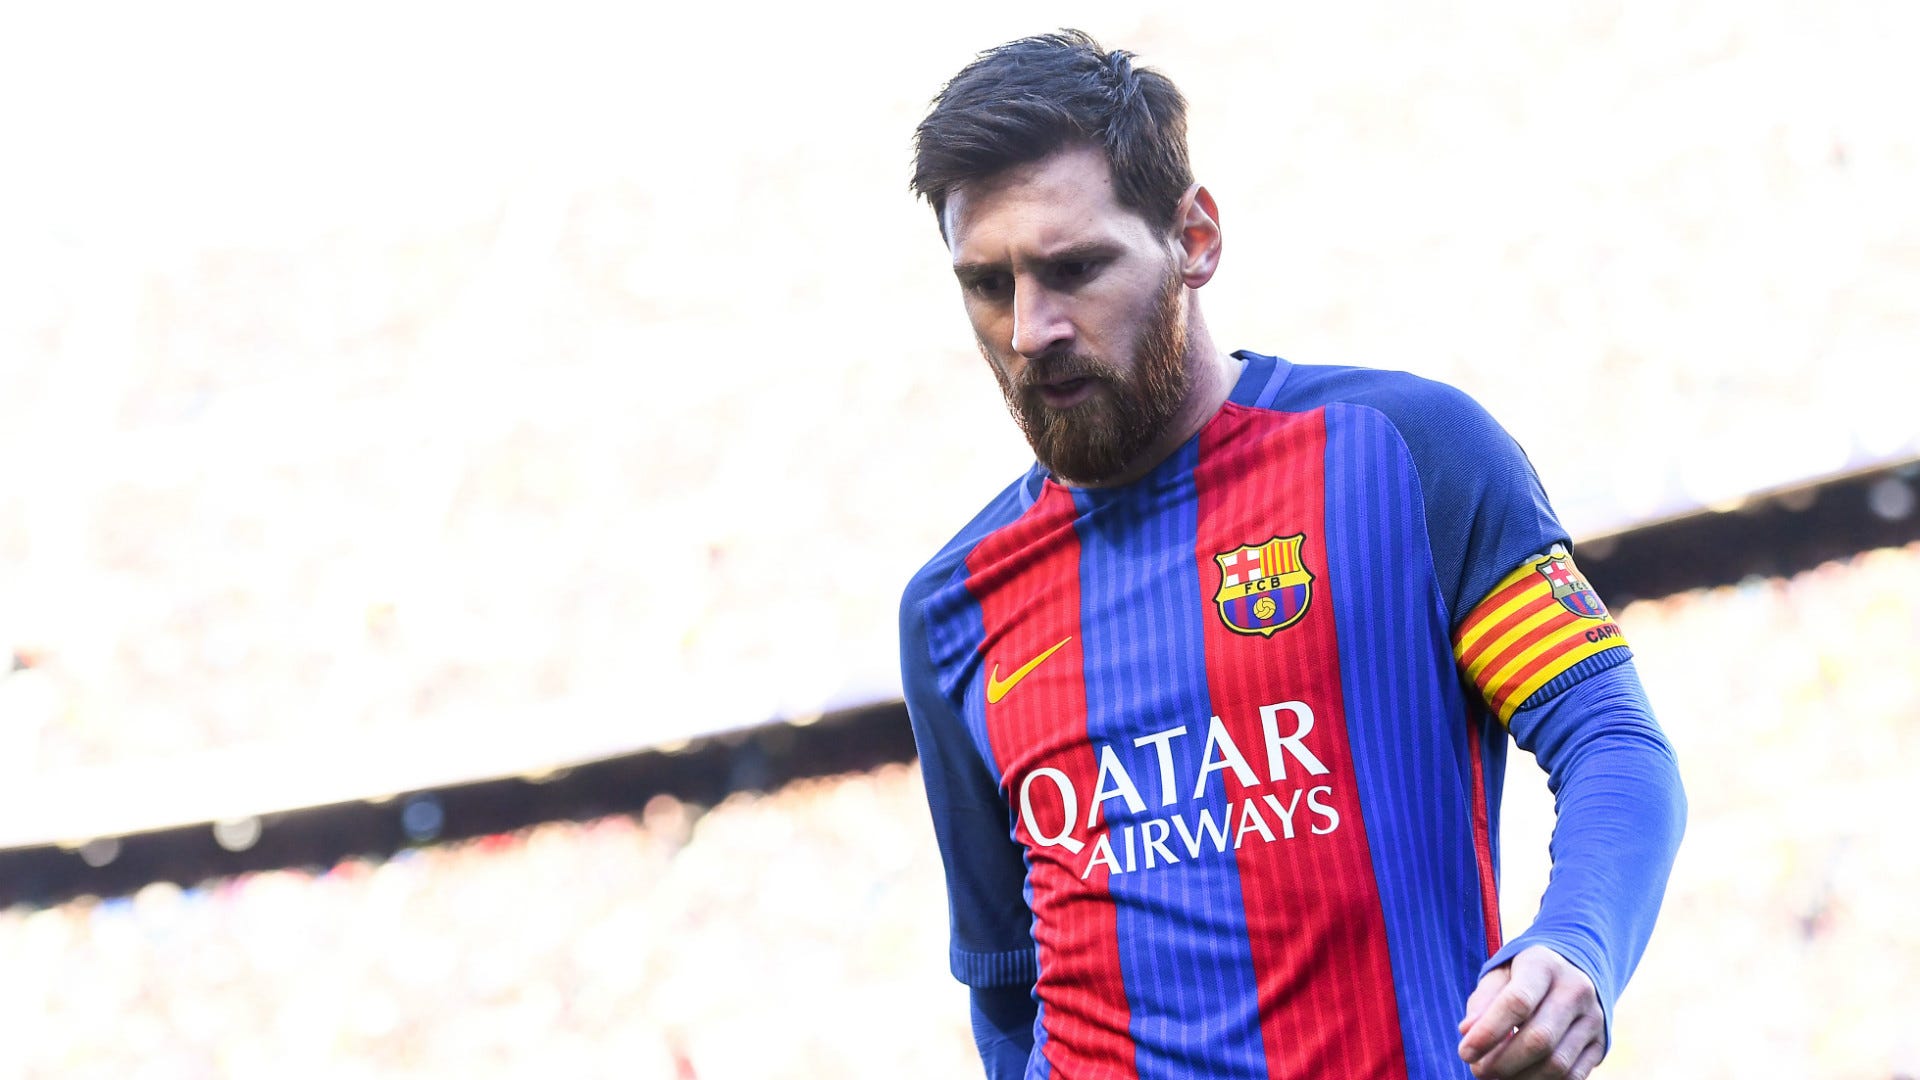 Nếu bạn là fan của Messi, thì bạn không thể bỏ qua hình ảnh mới nhất của anh ta tại địa điểm mới. Anh ta luôn có những bức ảnh tuyệt đẹp và đầy sức sống, chắc chắn sẽ khiến bạn thích thú!